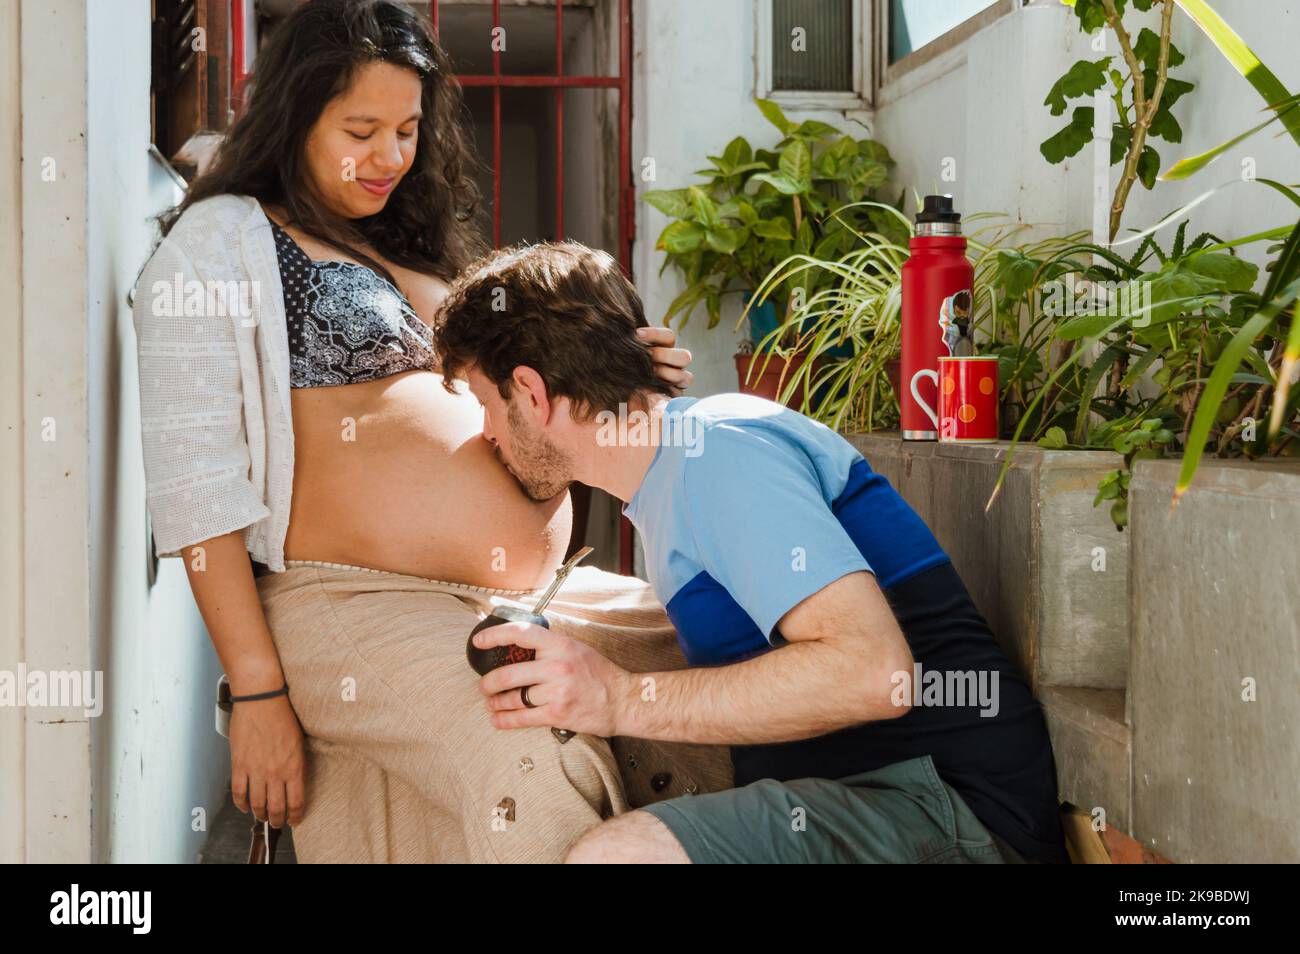 joven caucásico latino en casa besando el vientre de su esposa, que está embarazada y sentada felizmente viendo cómo le da amor a su próximo bebé. Foto de stock